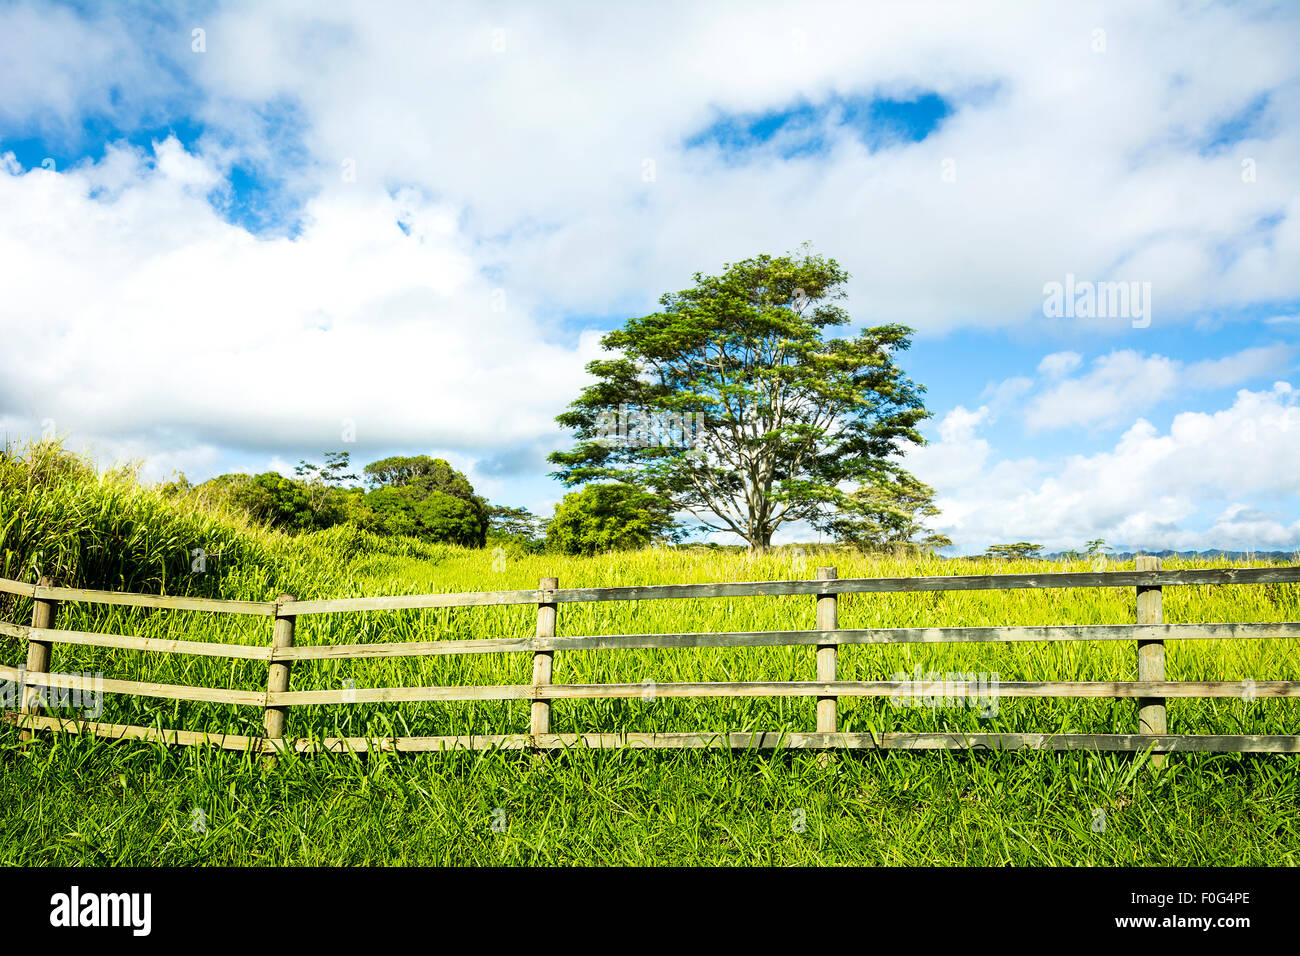 Eine lebendige, grüne Wiese hinter dem ranching Zaun zeigt das üppige Wachstum in einem ländlichen Bauerndorf auf Kauai Hawaii. Stockfoto